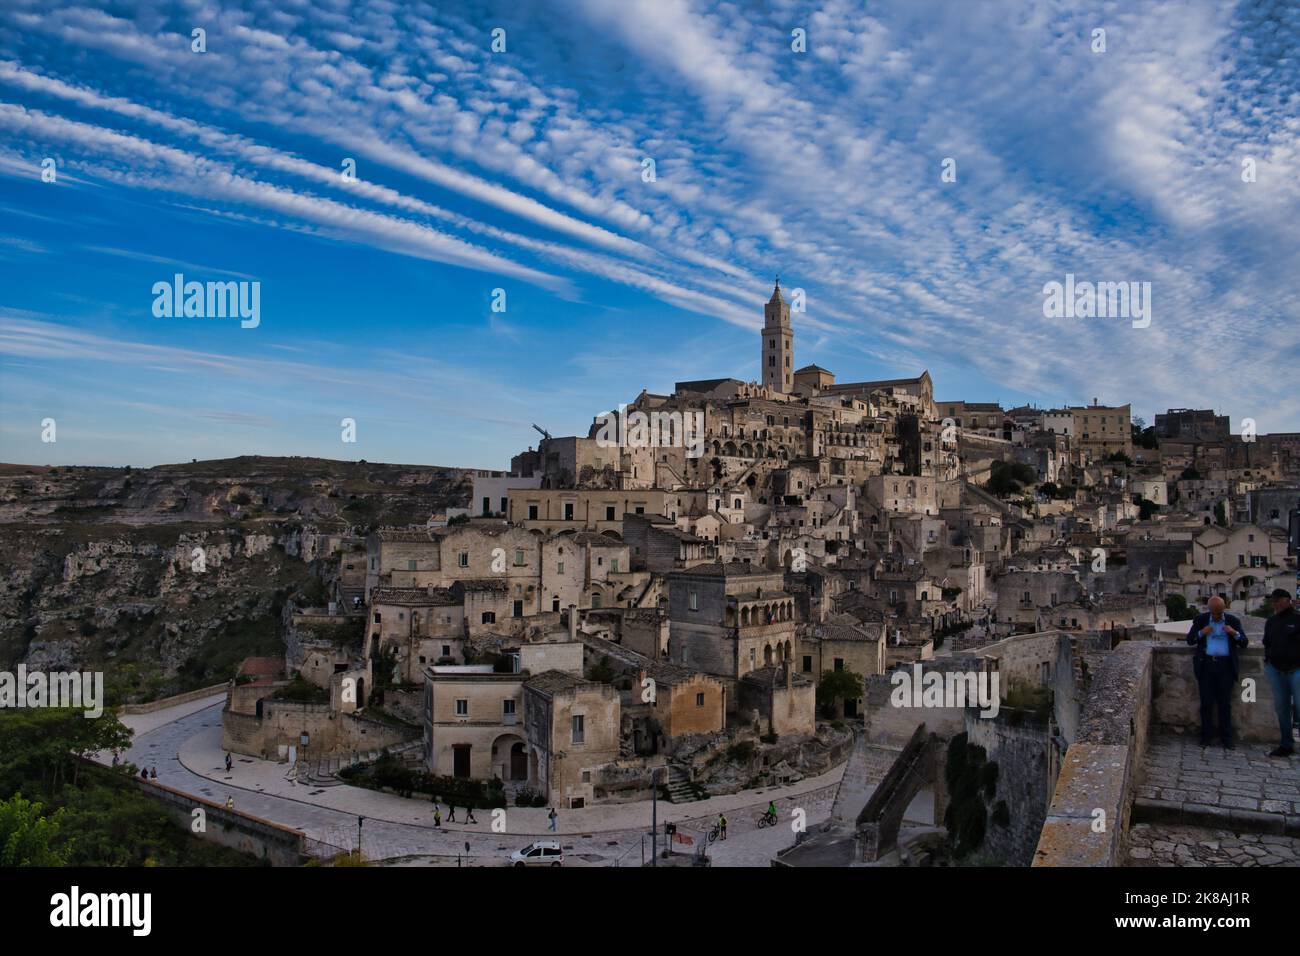 Vista panoramica del Sasso Barisano sotto un cielo panoramico a Matera Foto Stock